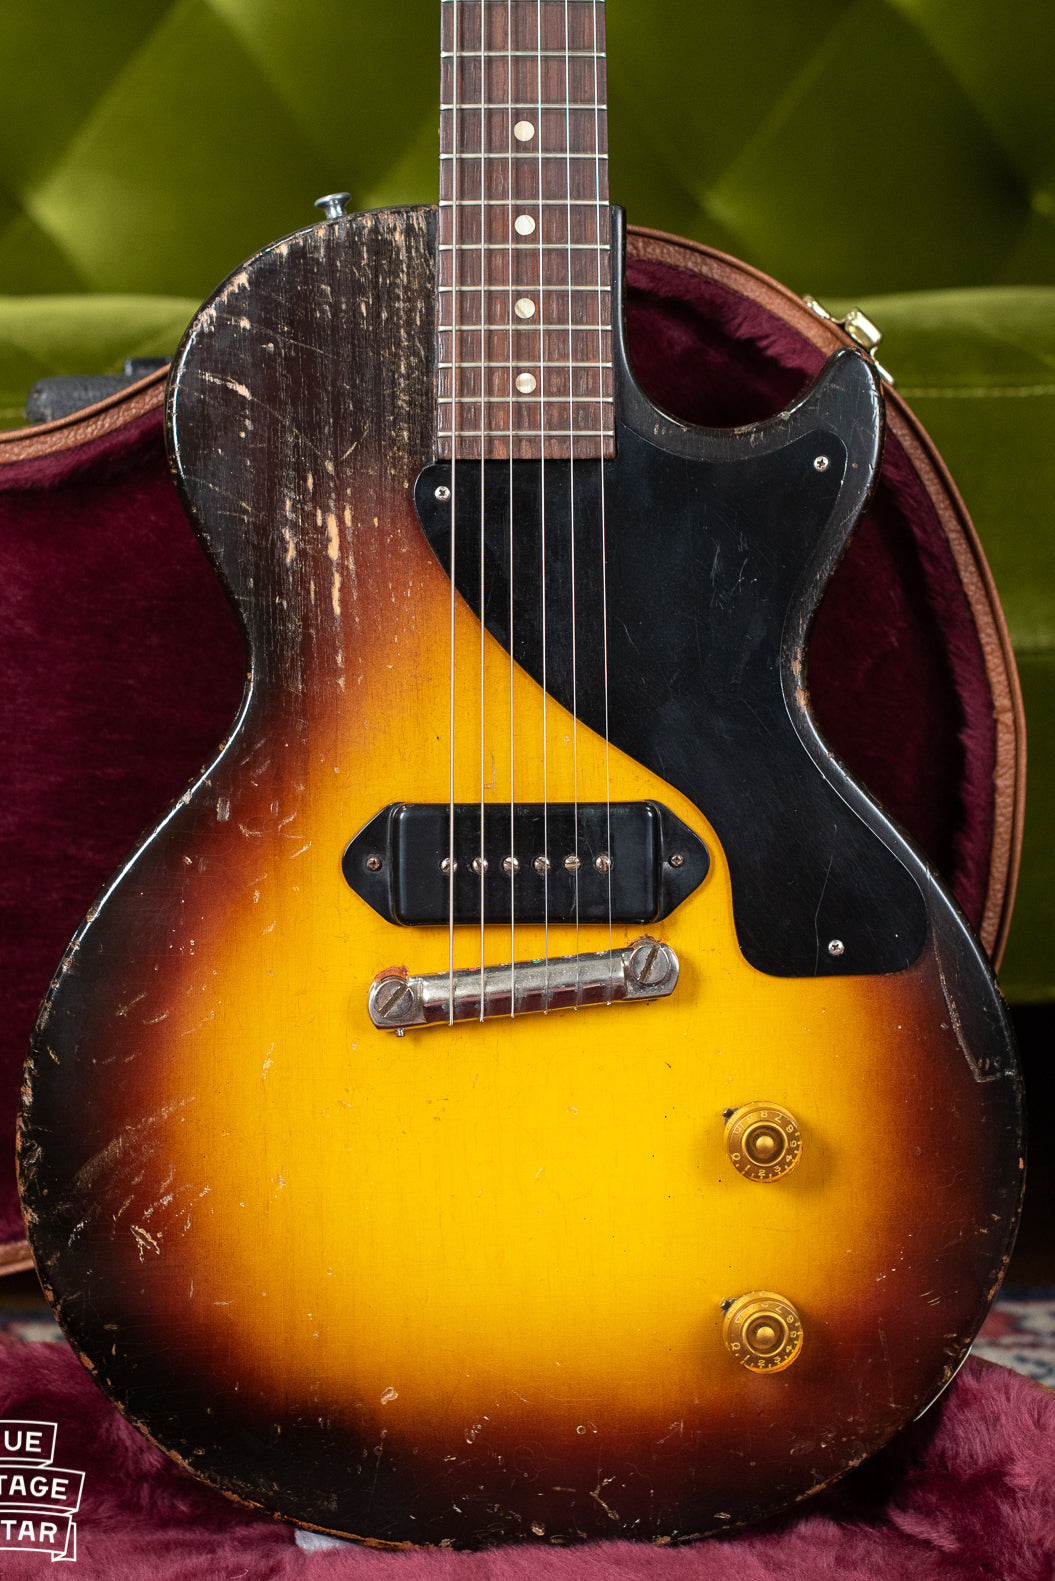 1955 Gibson Les Paul Junior guitar